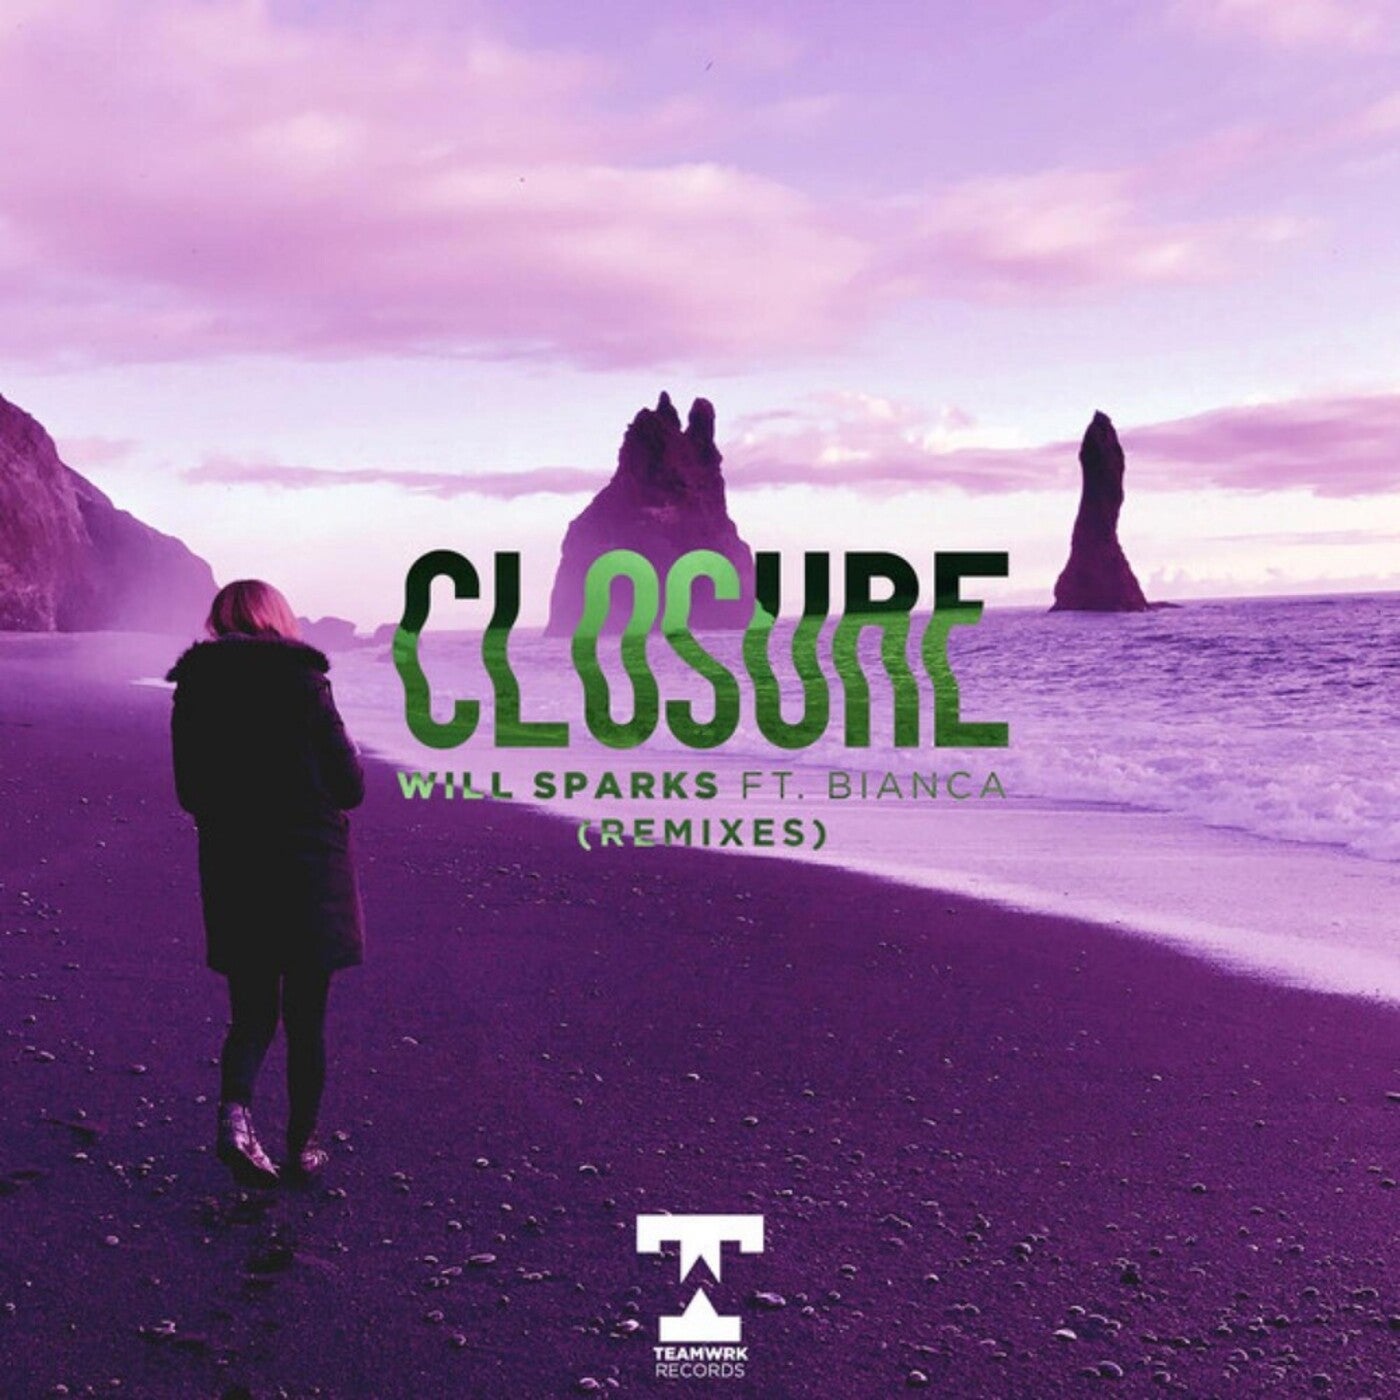 Closure (Remixes)